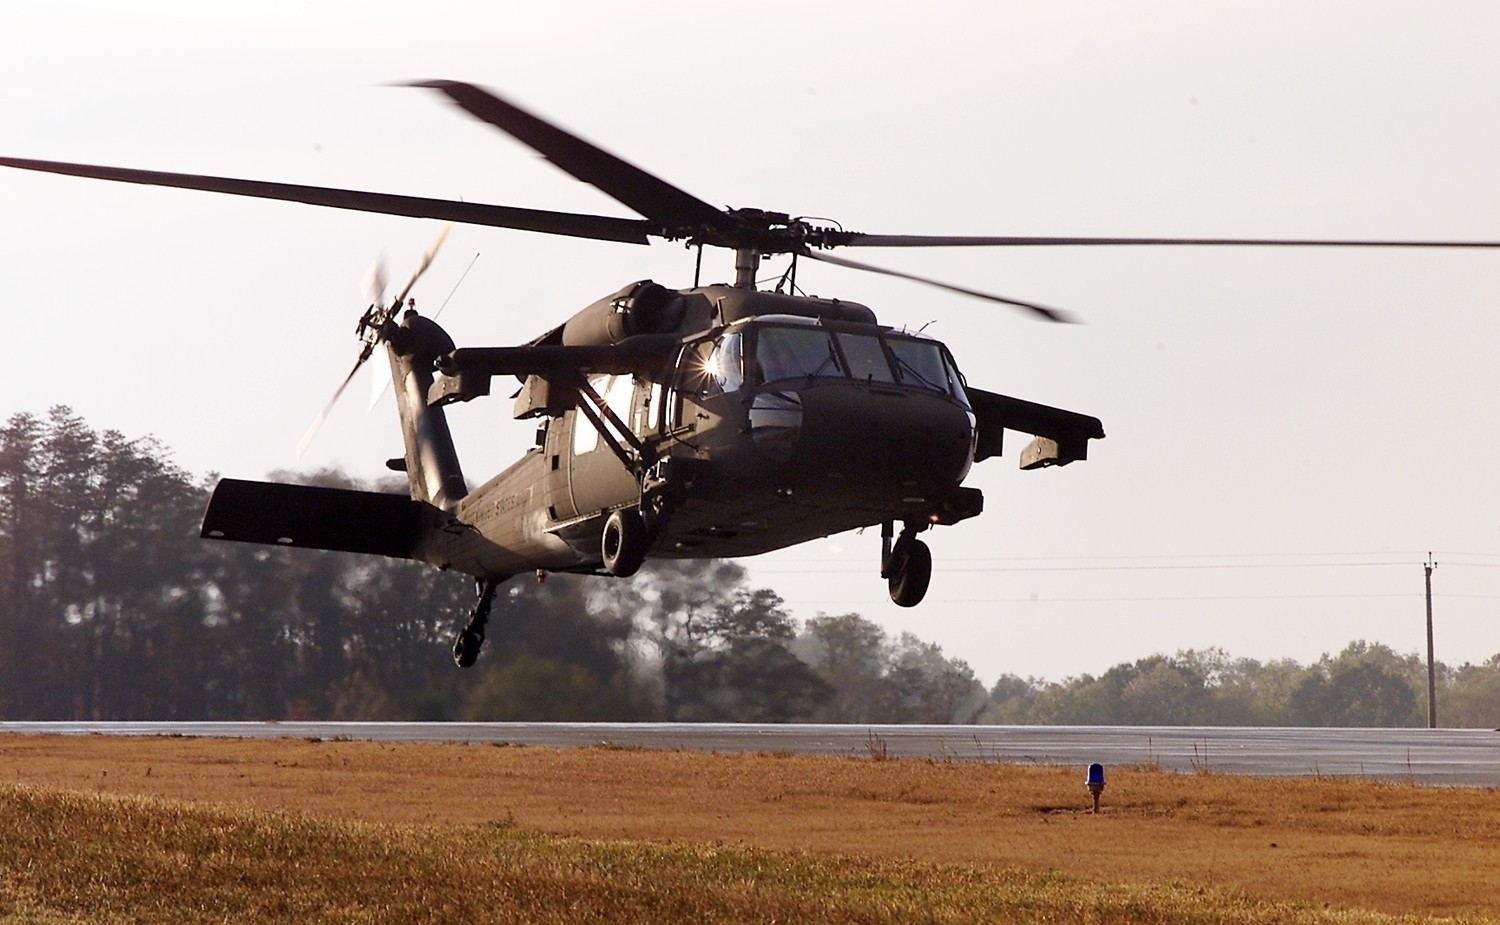 Σύντομα η LoA από τις ΗΠΑ για την προμήθεια 35 μεταφορικών ελικοπτέρων UH-60M για την ΑΣ